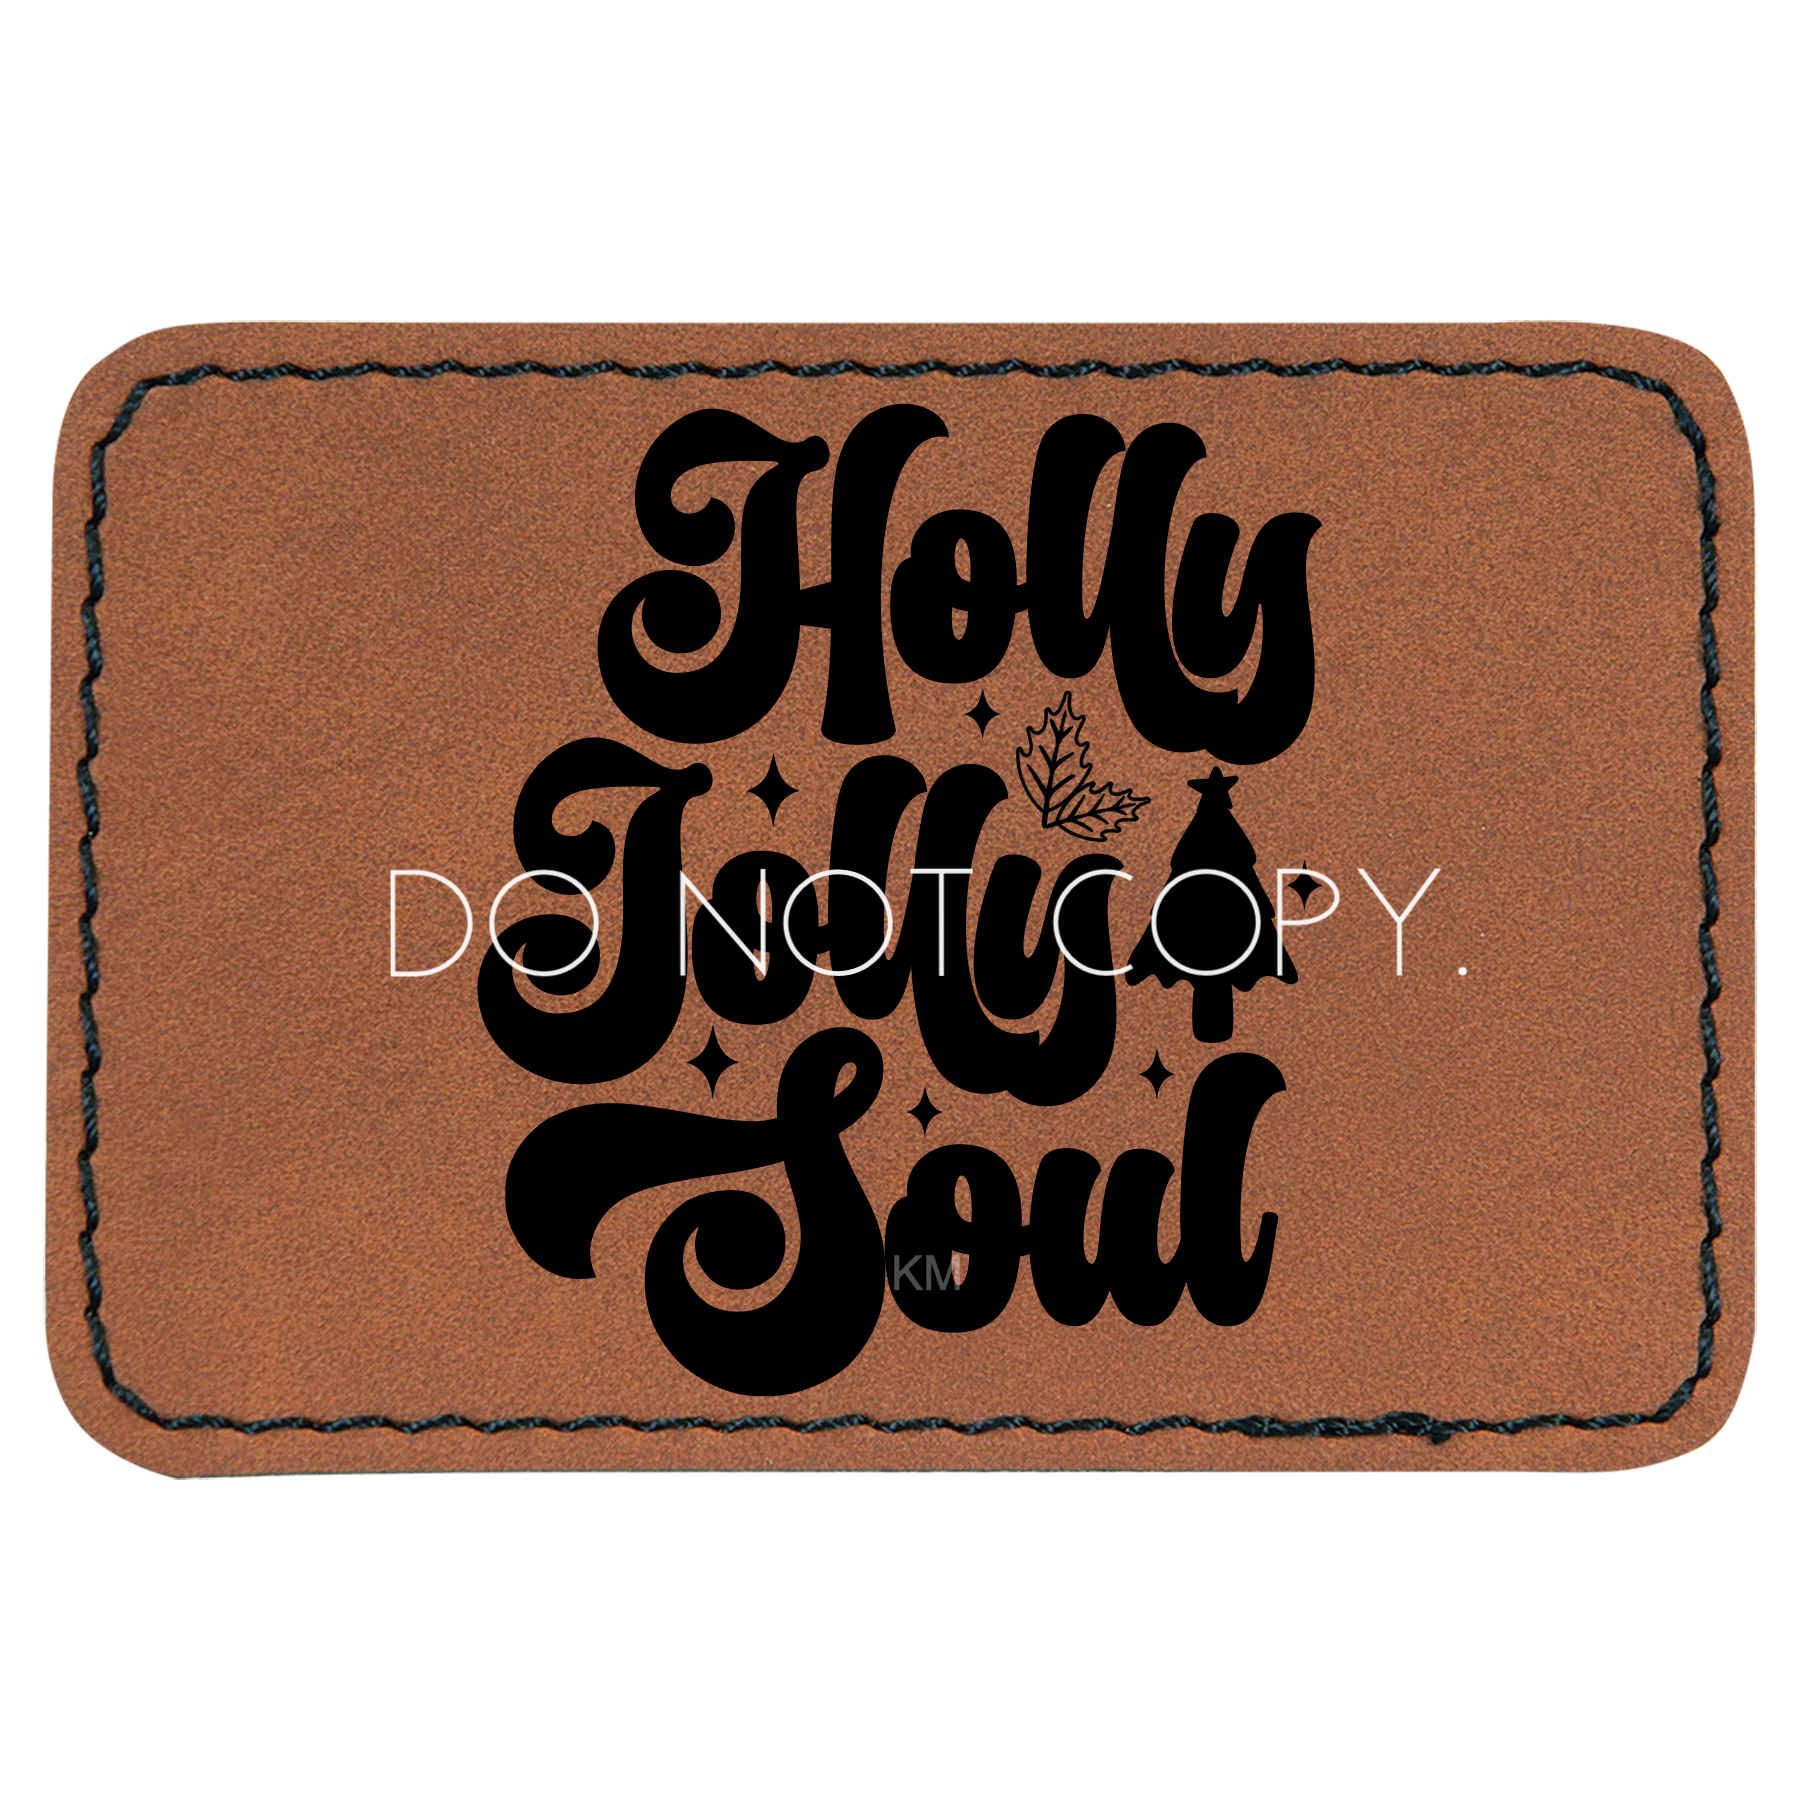 Holly Jolly Soul Patch